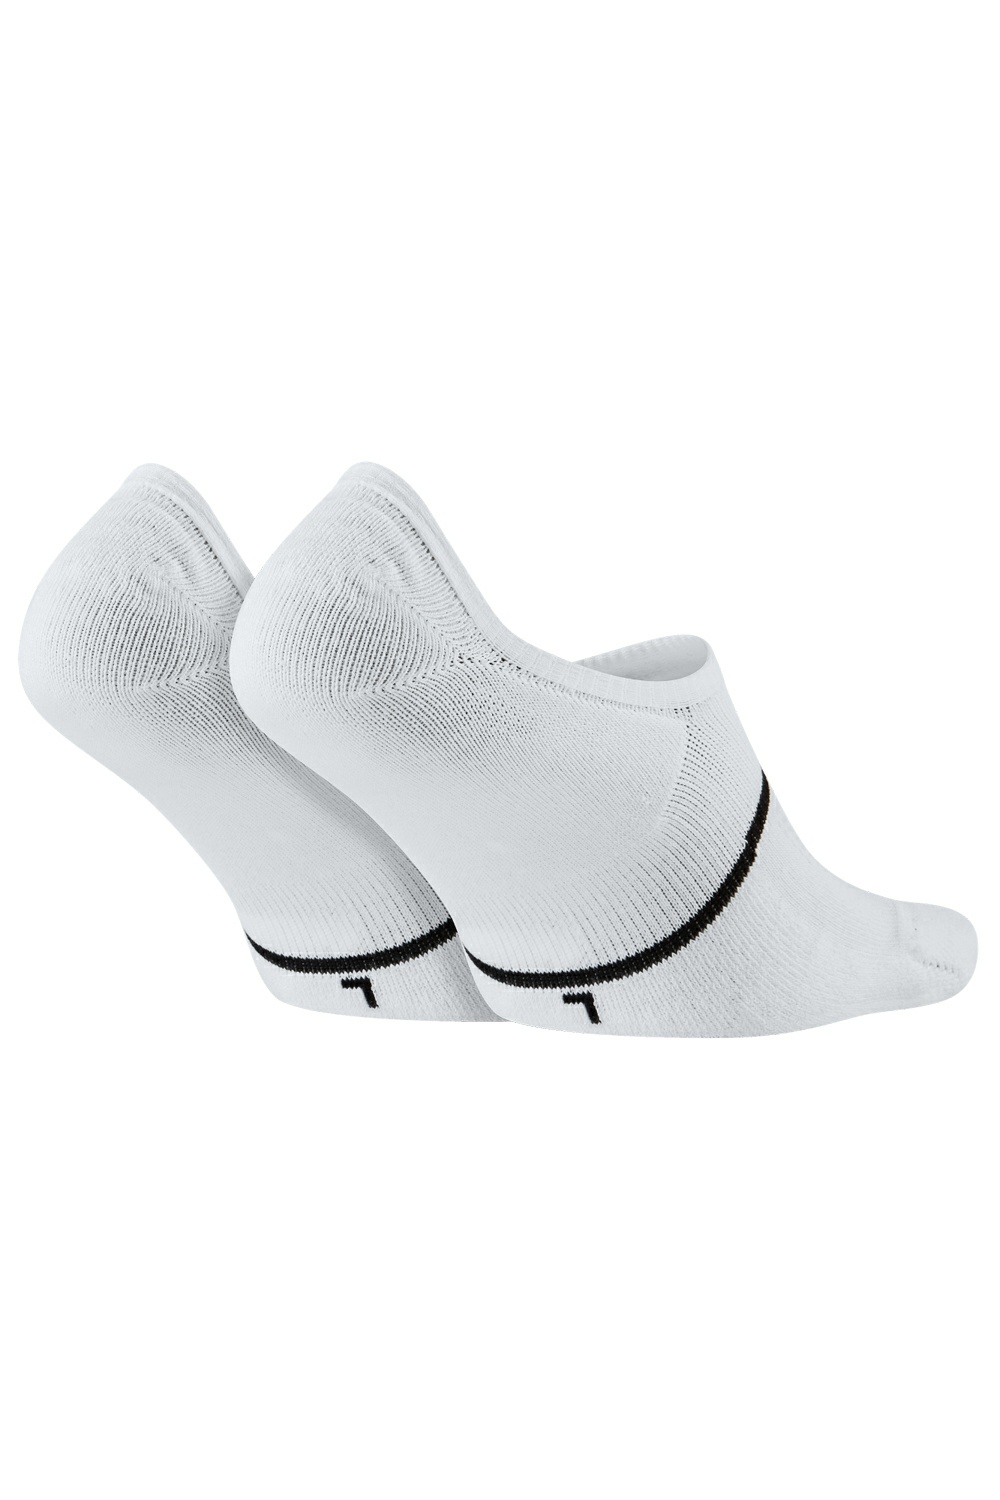 Γυναικεία/Αξεσουάρ/Κάλτσες NIKE - Unisex κάλτσες σετ των 2 ΝΙΚΕ SNKR SOX ESNTL NO SHOW λευκές